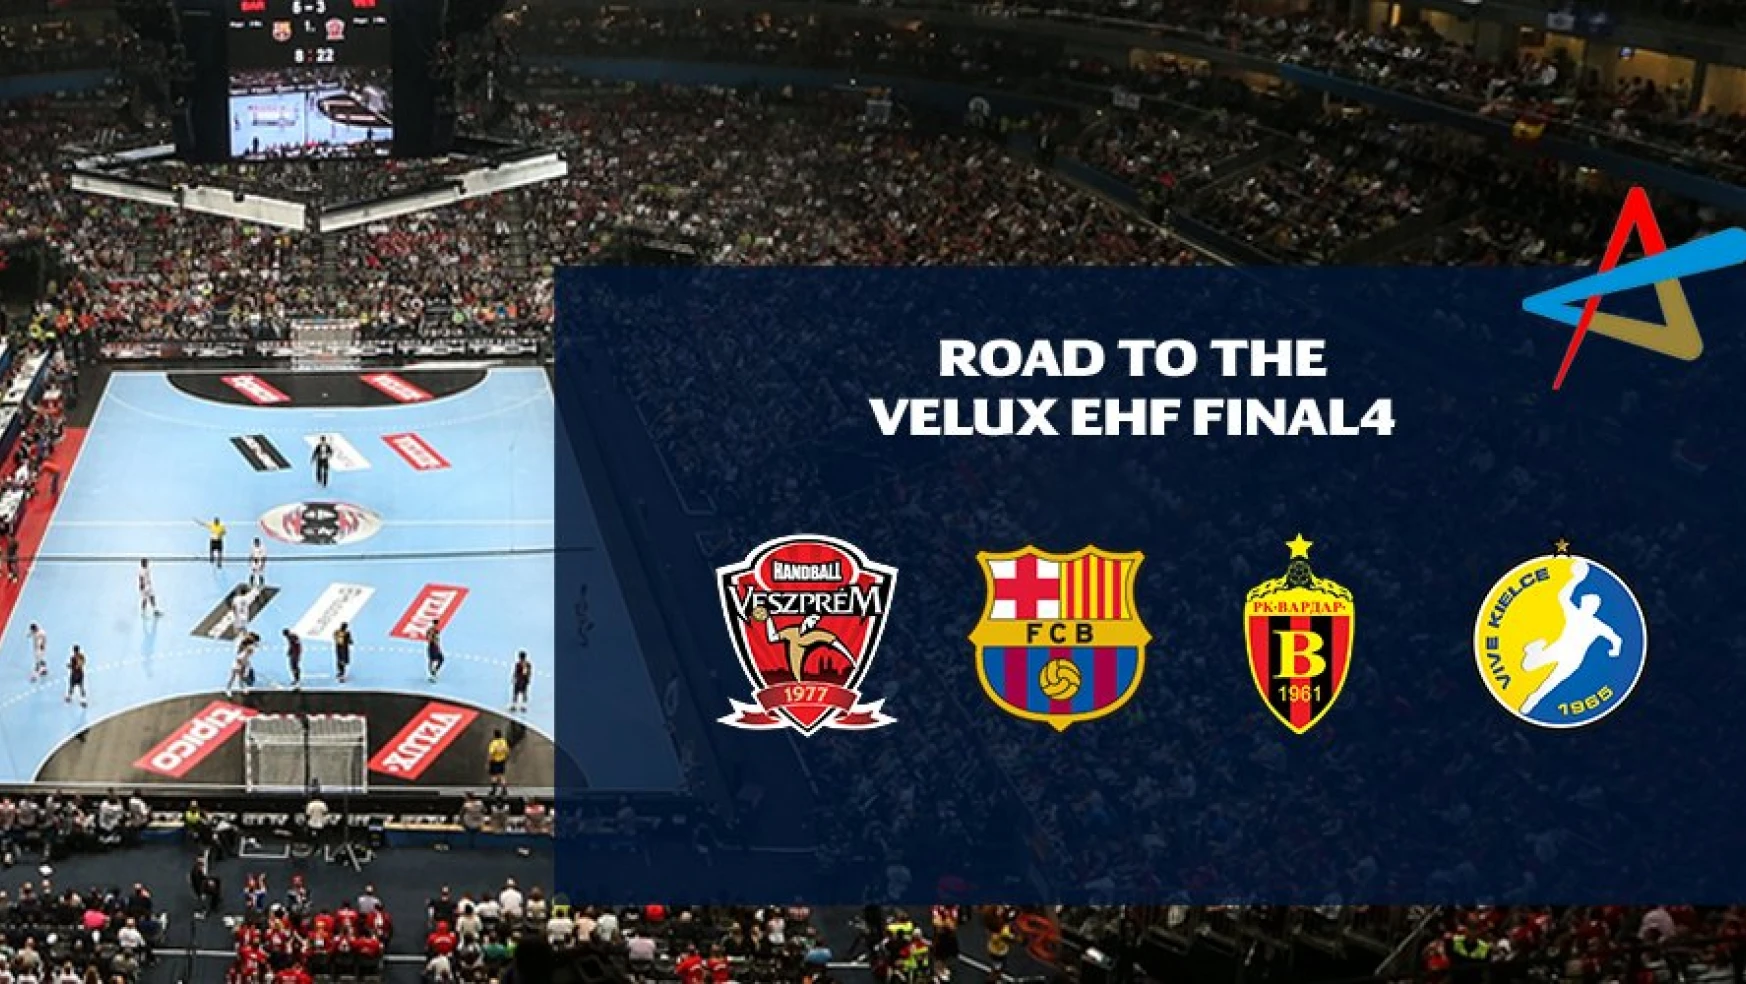 VELUX EHF Final4 TV kanalları belli oldu